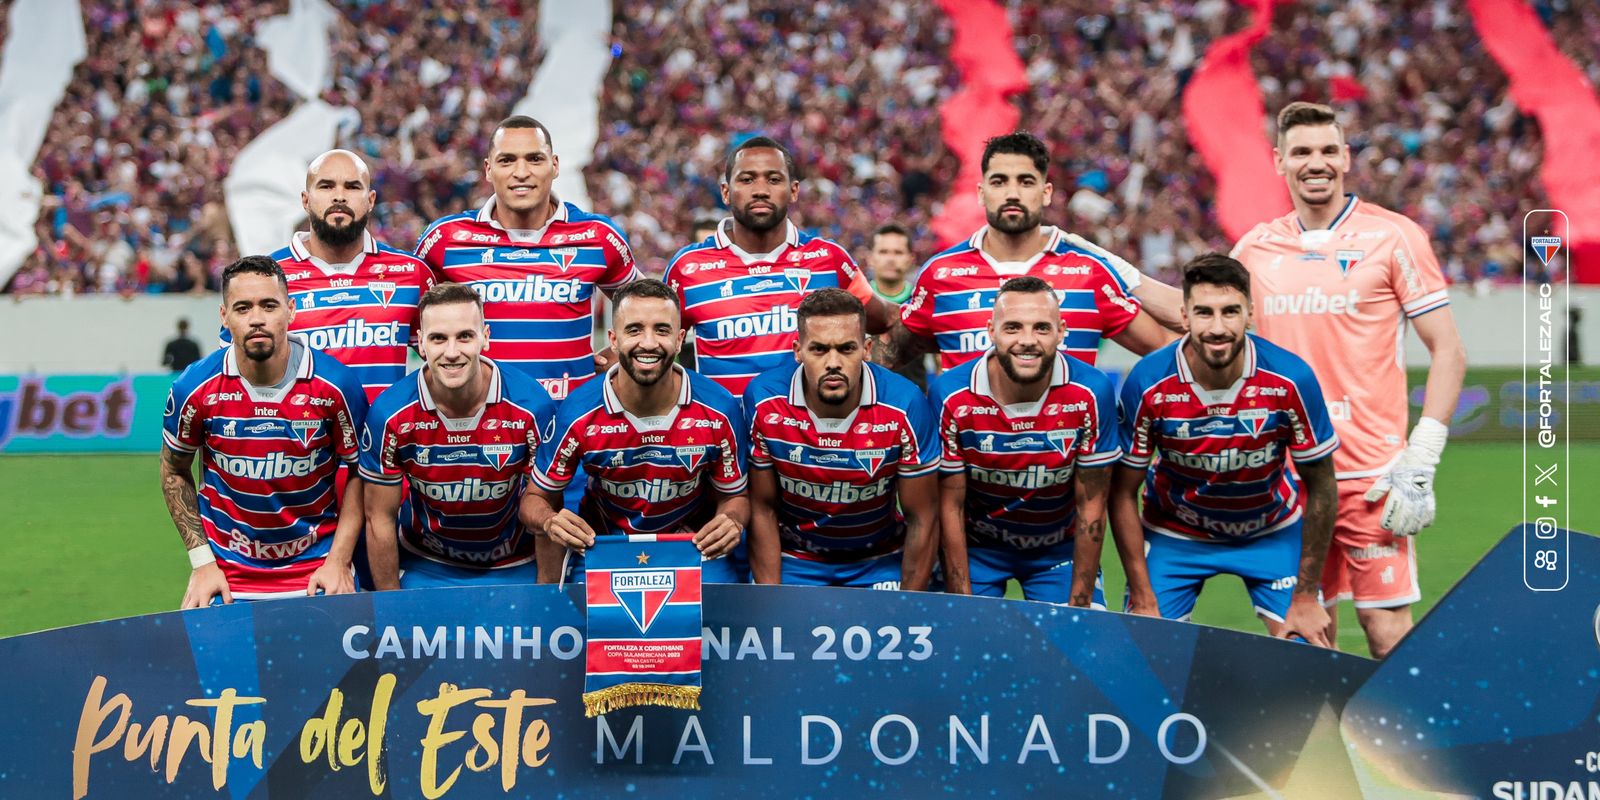 Focados no Brasileirão, Corinthians e Flamengo medem forças em